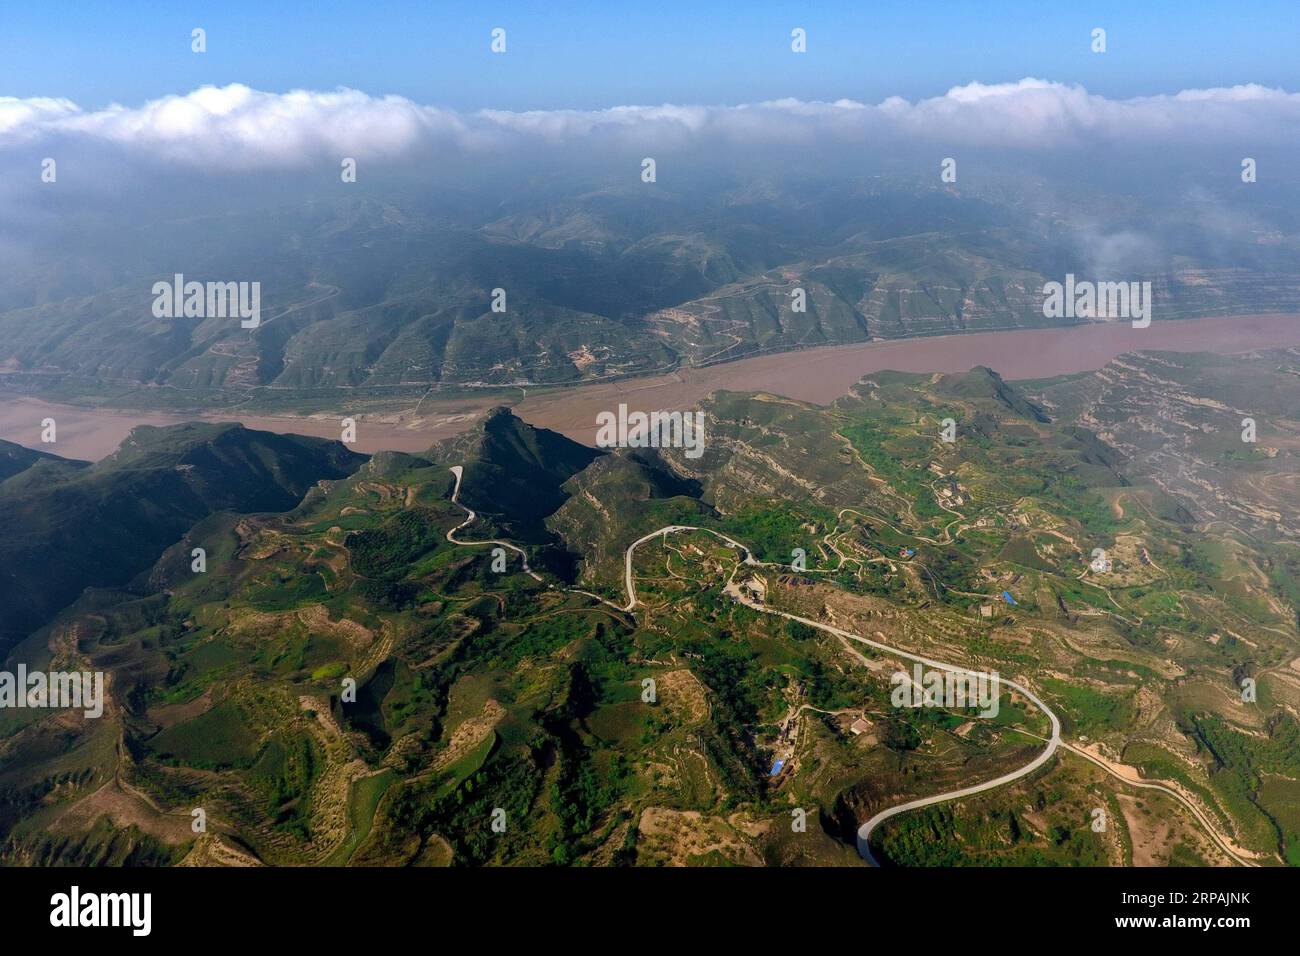 (190513) -- PECHINO, 13 maggio 2019 (Xinhua) -- foto aerea scattata il 6 settembre 2017 mostra lo scenario del fiume giallo nella contea di Yonghe, nella provincia dello Shanxi della Cina settentrionale. L'evento a tema dello Shanxi Day, che si è tenuto nell'ambito della mostra internazionale di orticoltura di Pechino, ha avuto inizio a Pechino il 12 maggio. Lo Shanxi Garden mette in mostra il suo impegno nell'ecologia e nel rimboschimento, nonché il suo concetto di sviluppo verde all'expo in corso. Non facendo più affidamento principalmente sulla sua industria carboniera per la crescita, Shanxi si è impegnata a sviluppare energia pulita e altre industrie emergenti per trovare un equilibrio Foto Stock